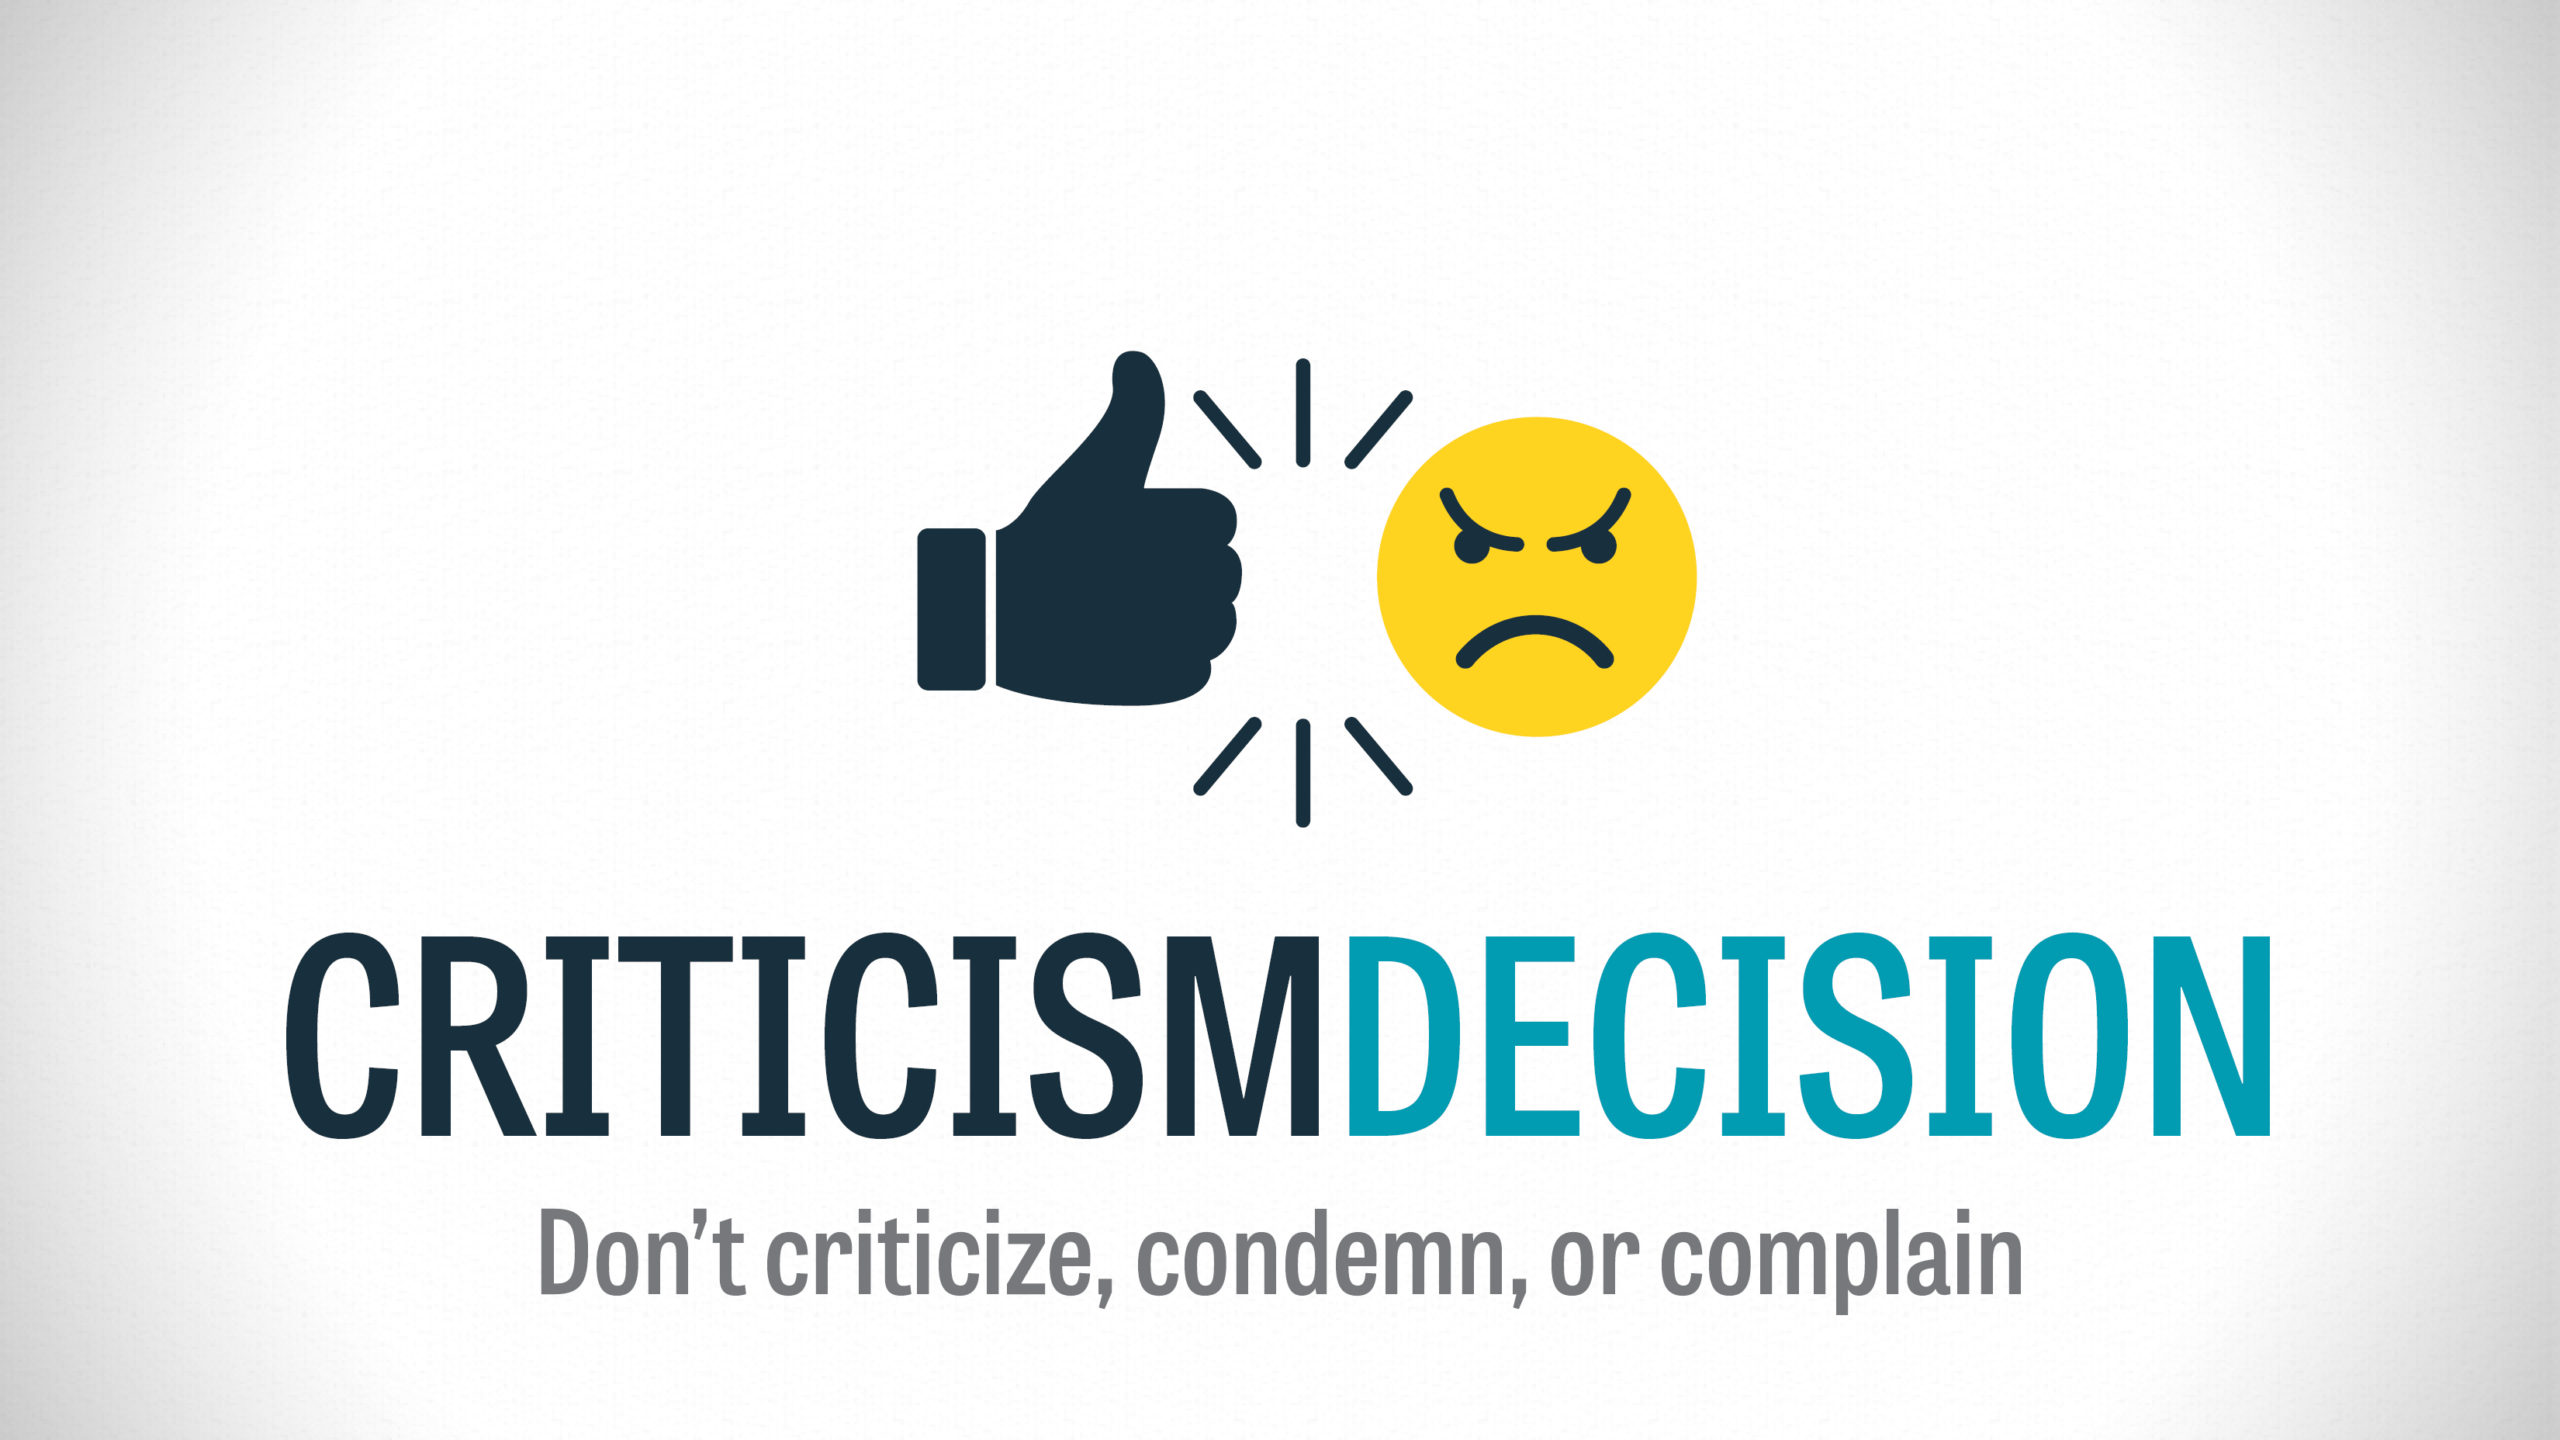 Criticism Decision – Part 1